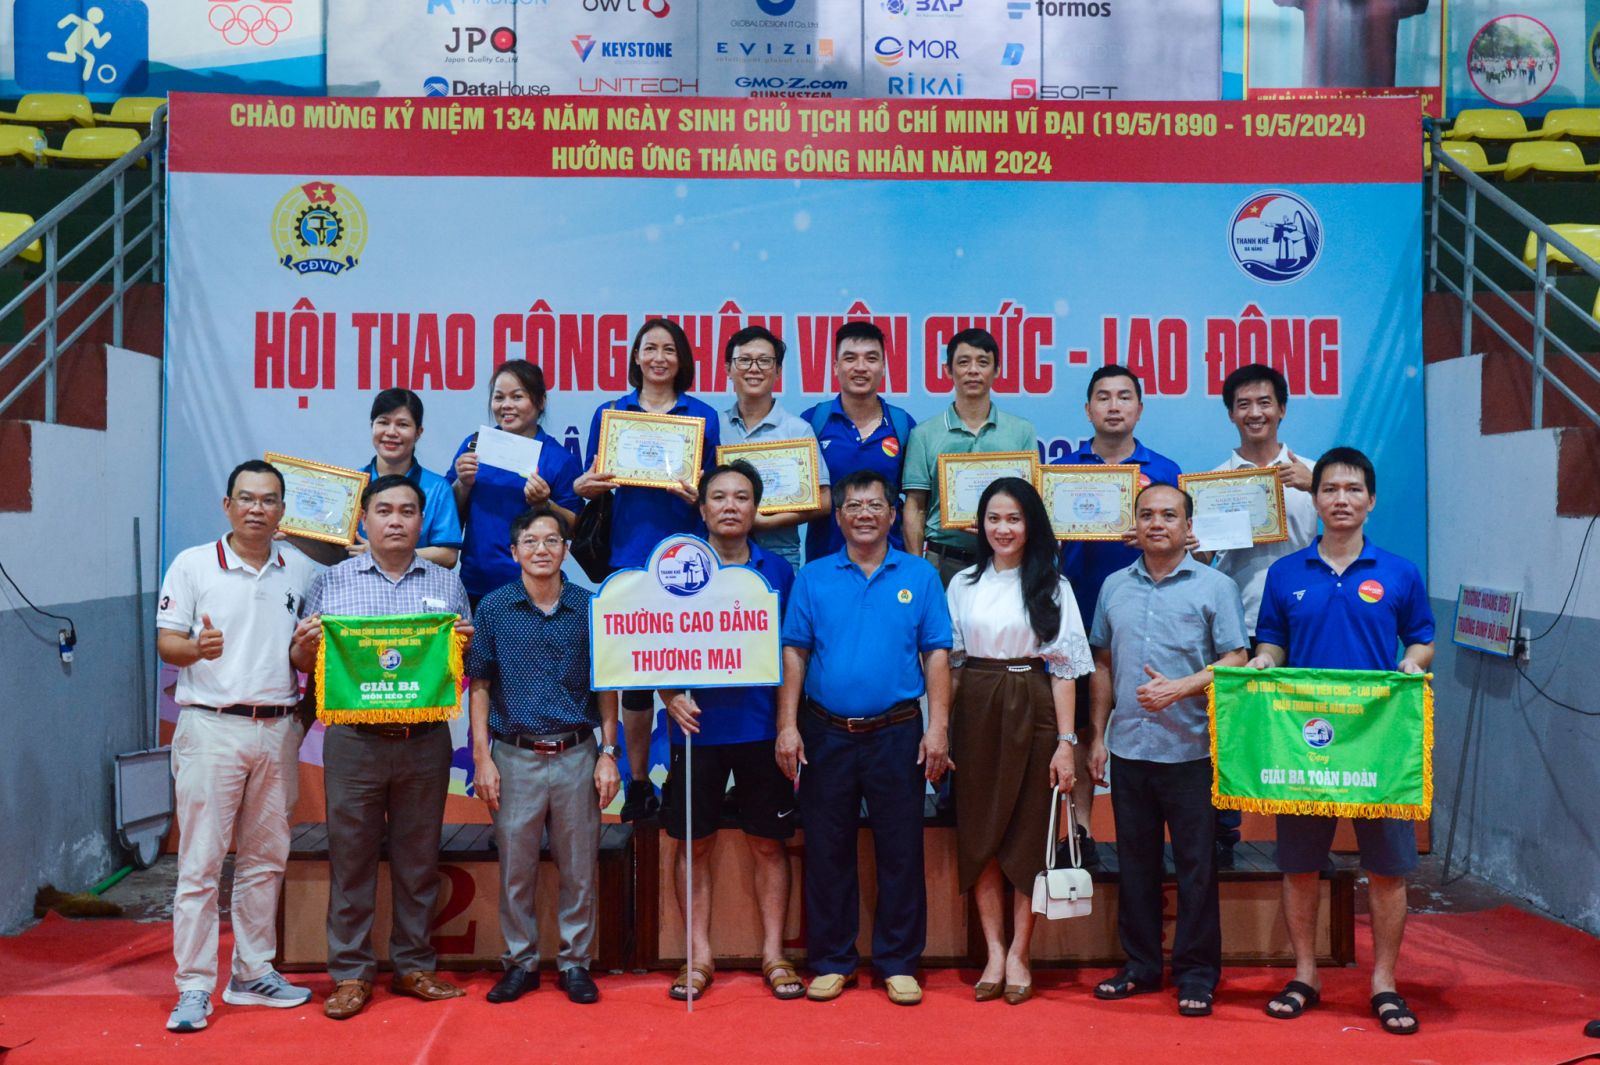 Trường Cao đẳng Thương mại đạt giải ba toàn đoàn hội thao CNVC-LĐ quận Thanh Khê năm 2024